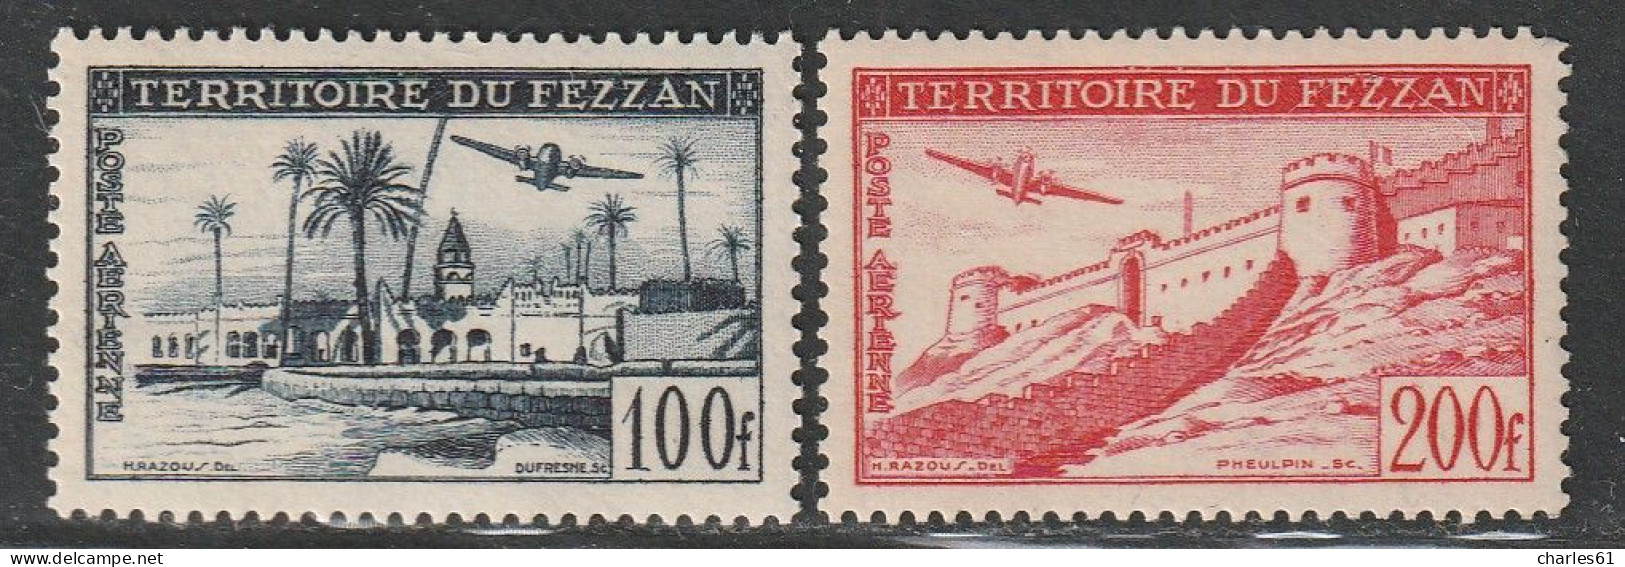 FEZZAN - Poste Aérienne N°6/7 ** (1951) - Ungebraucht